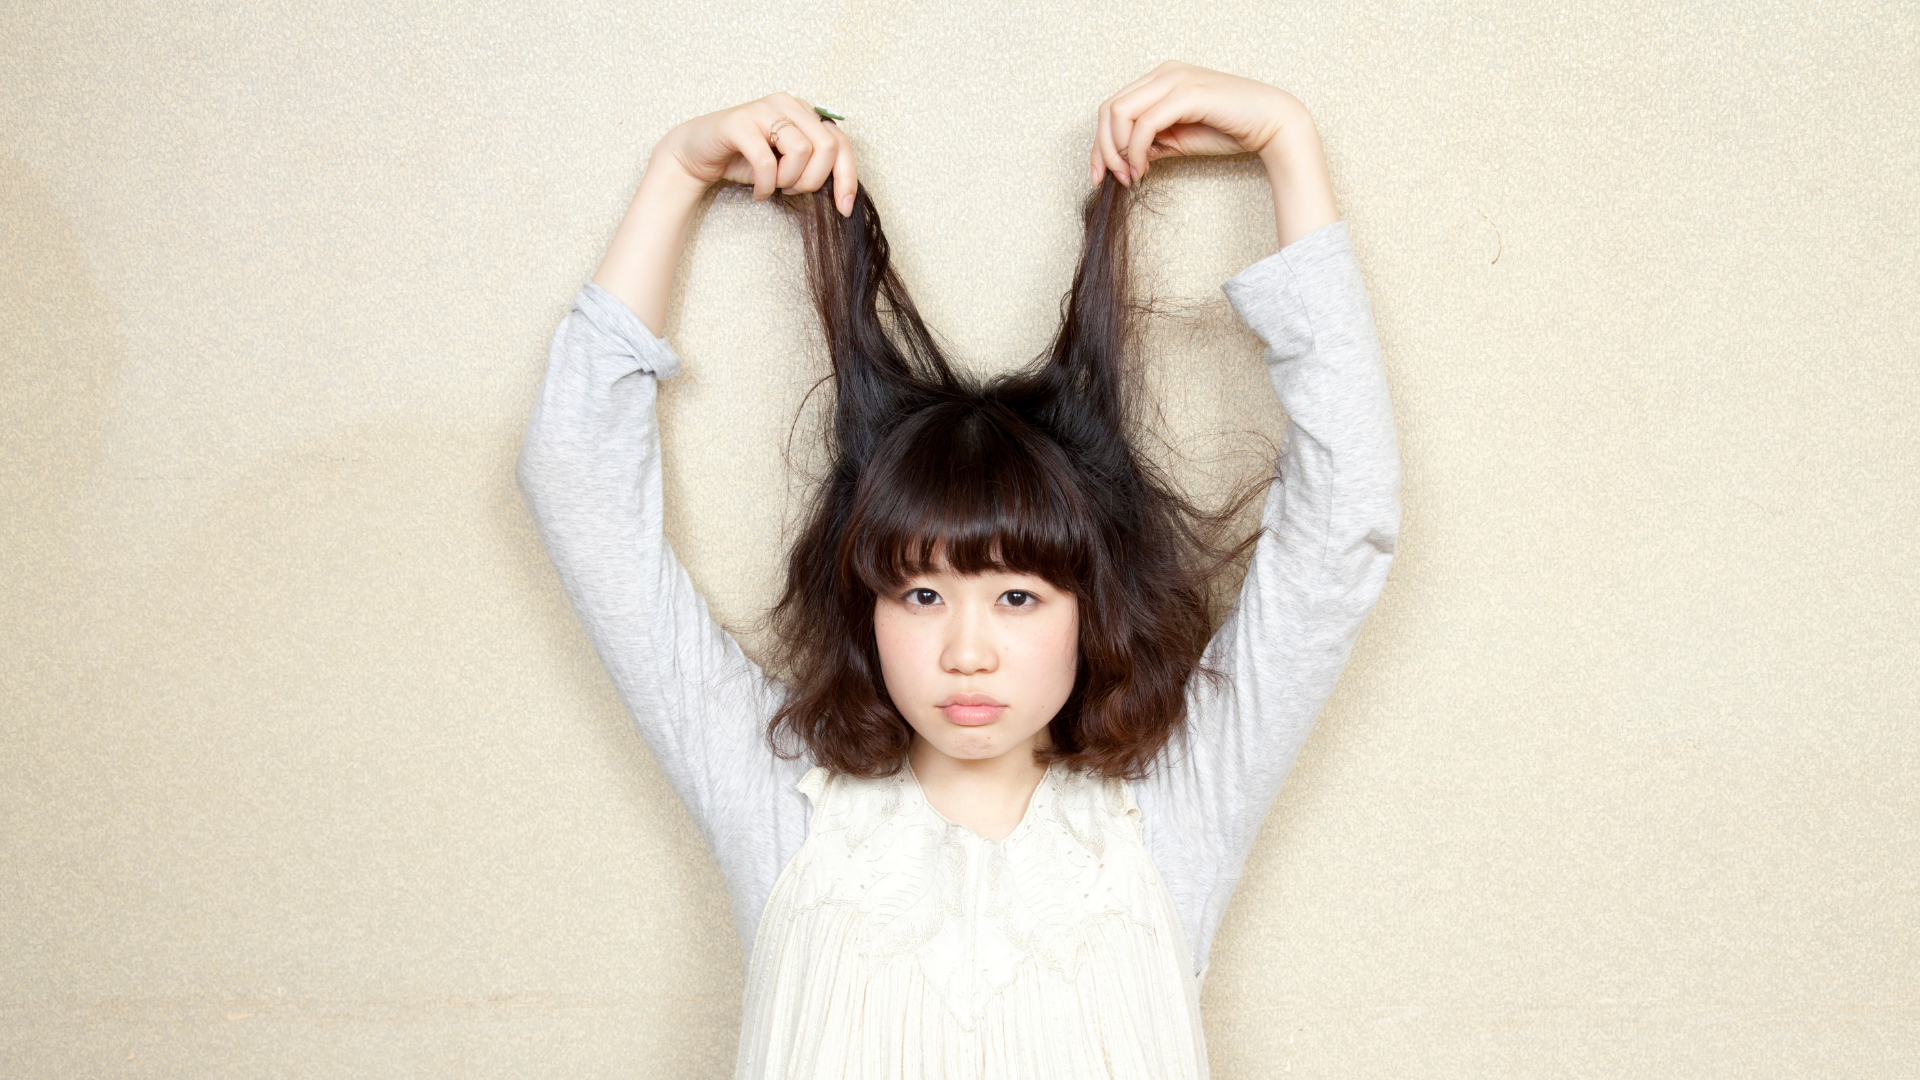 Foto de capa do artigo "Frizz no cabelo: 9 principais causas e dicas para diminuir"